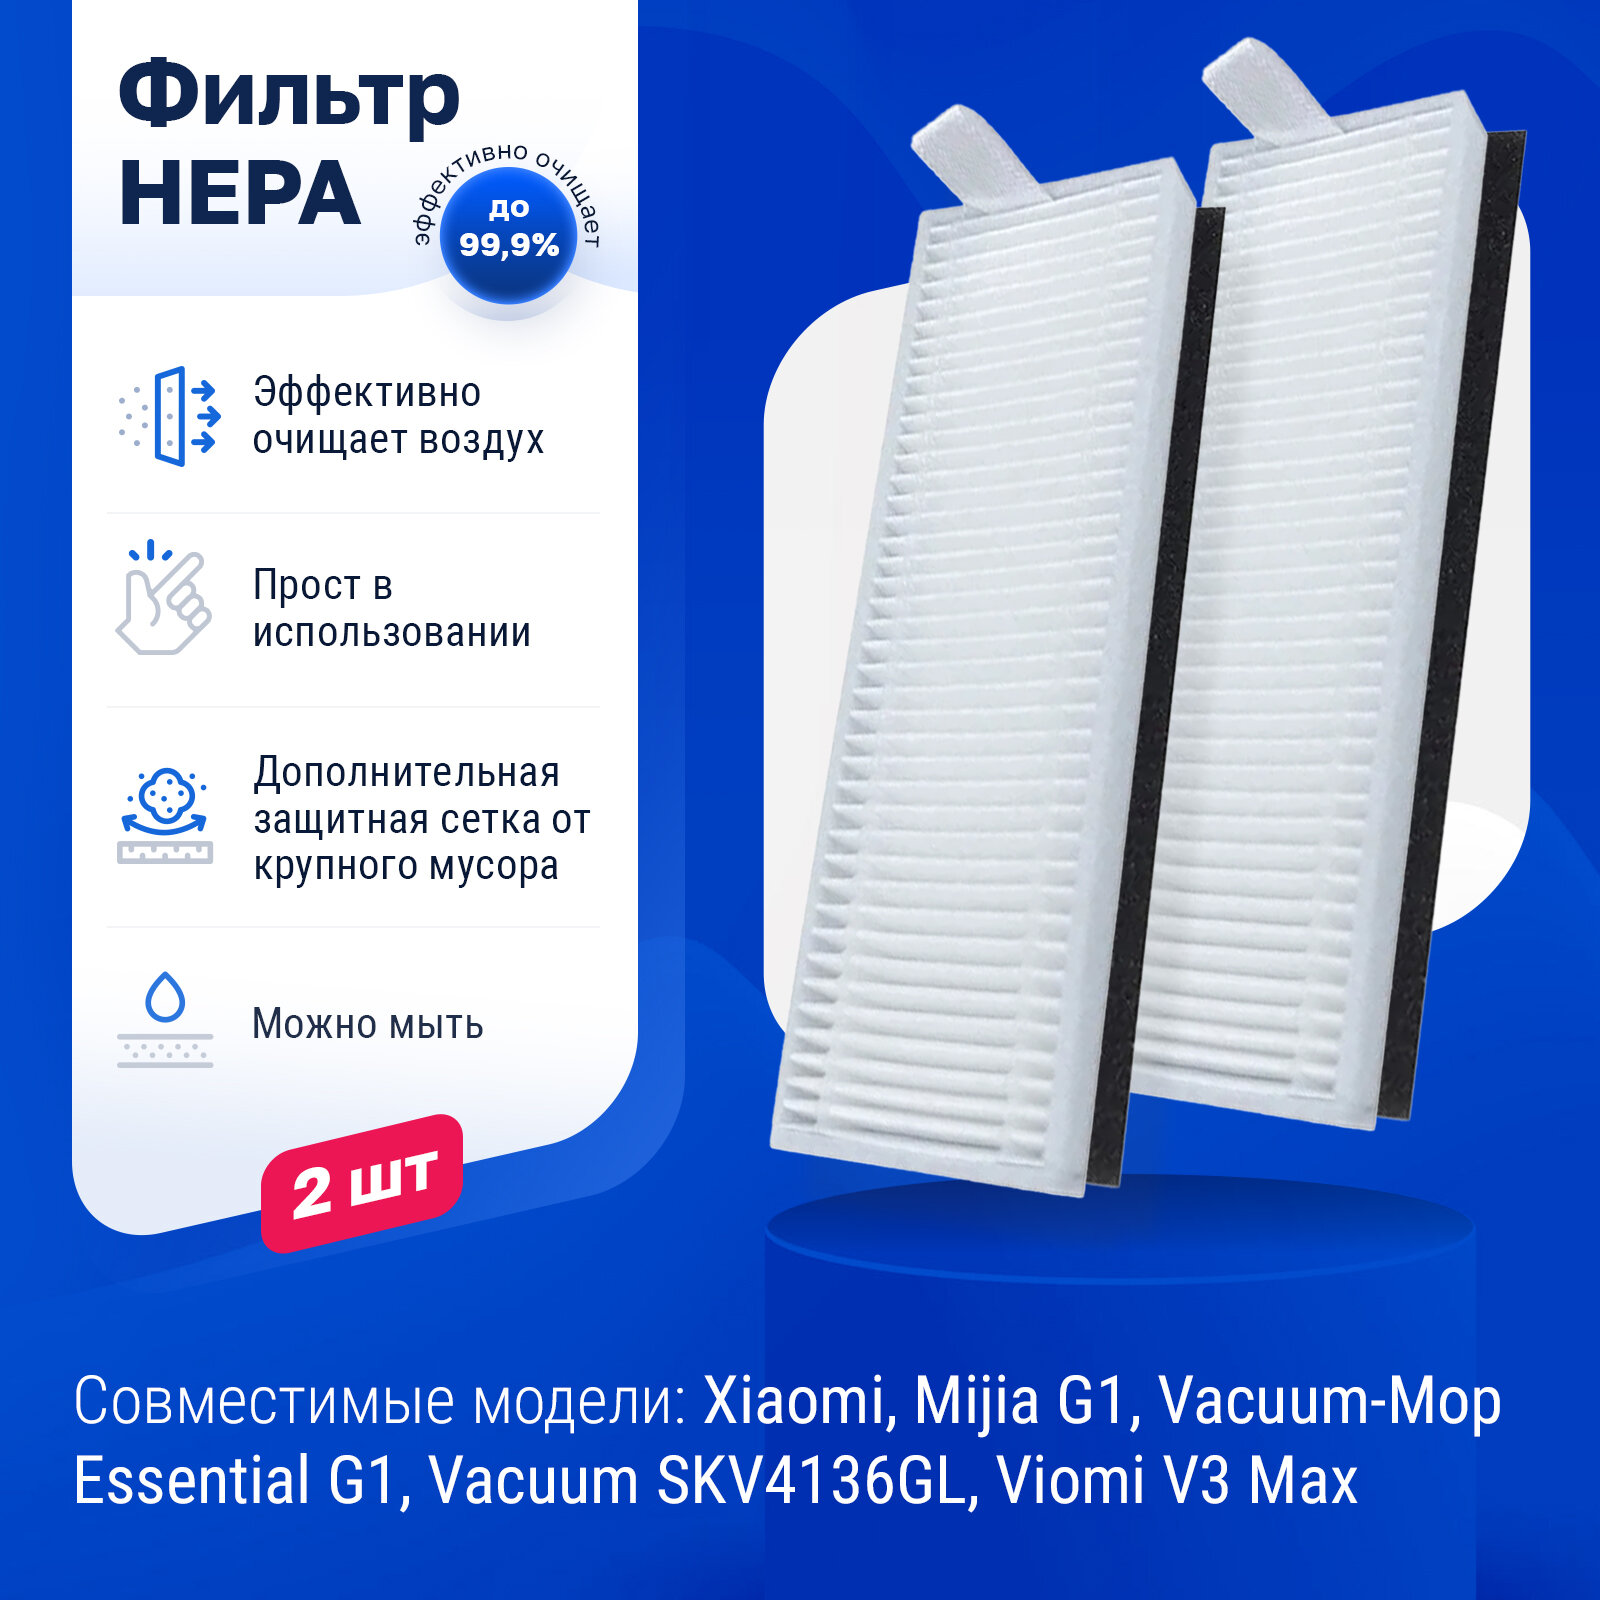 Комплект фильтров для робот-пылесоса Xiaomi Mijia G1 Vacuum-Mop Essential G1 Vacuum SKV4136GL - 2 шт